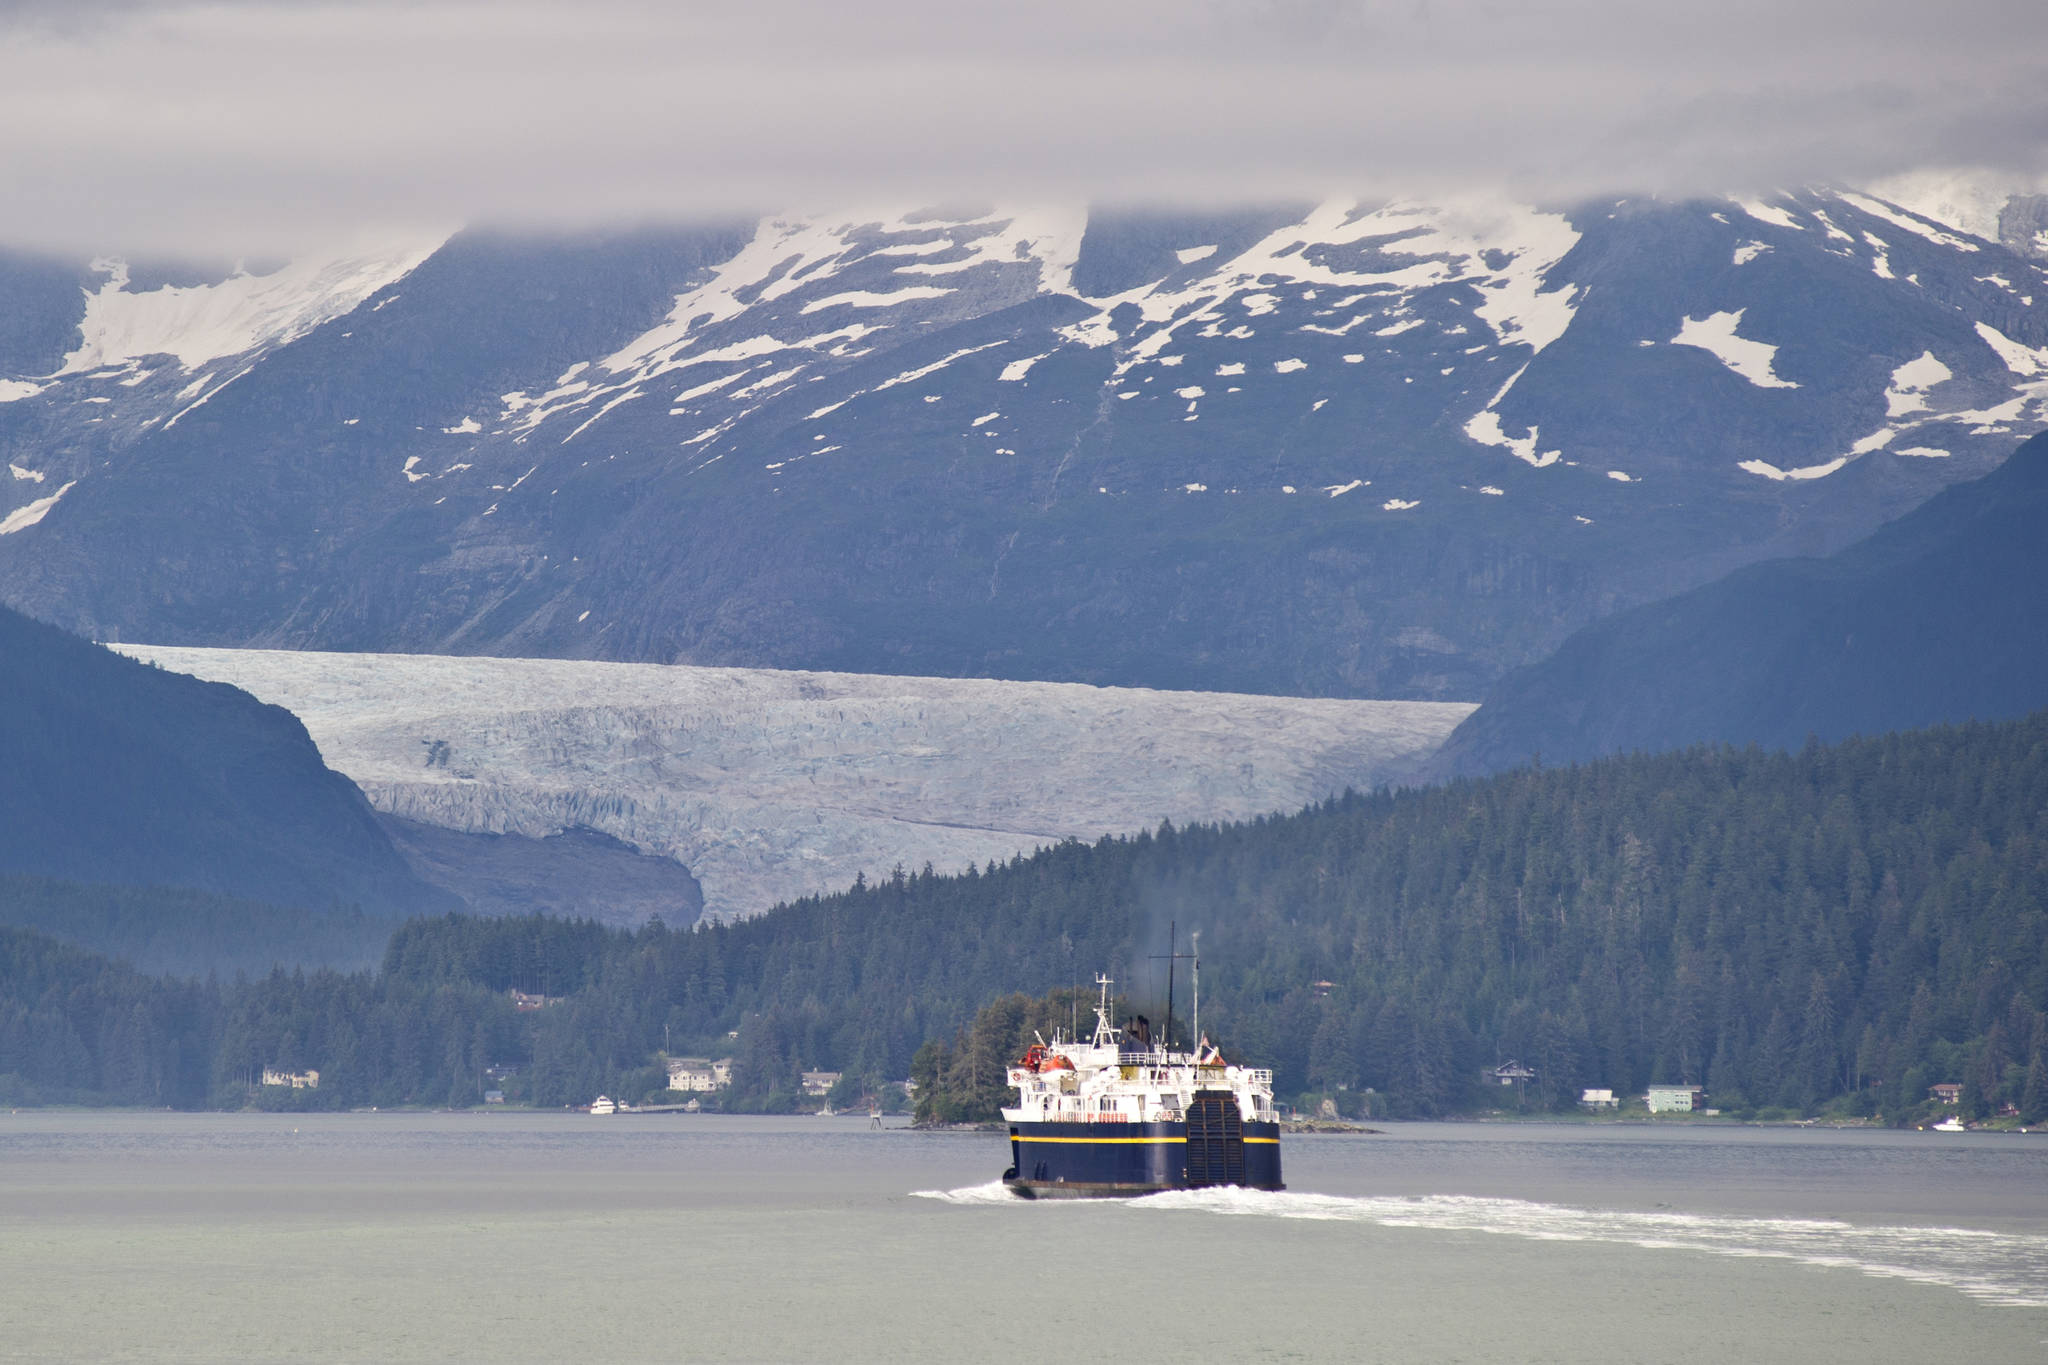 Opinion: Misleading statistics don’t help fix Alaska’s ferry system